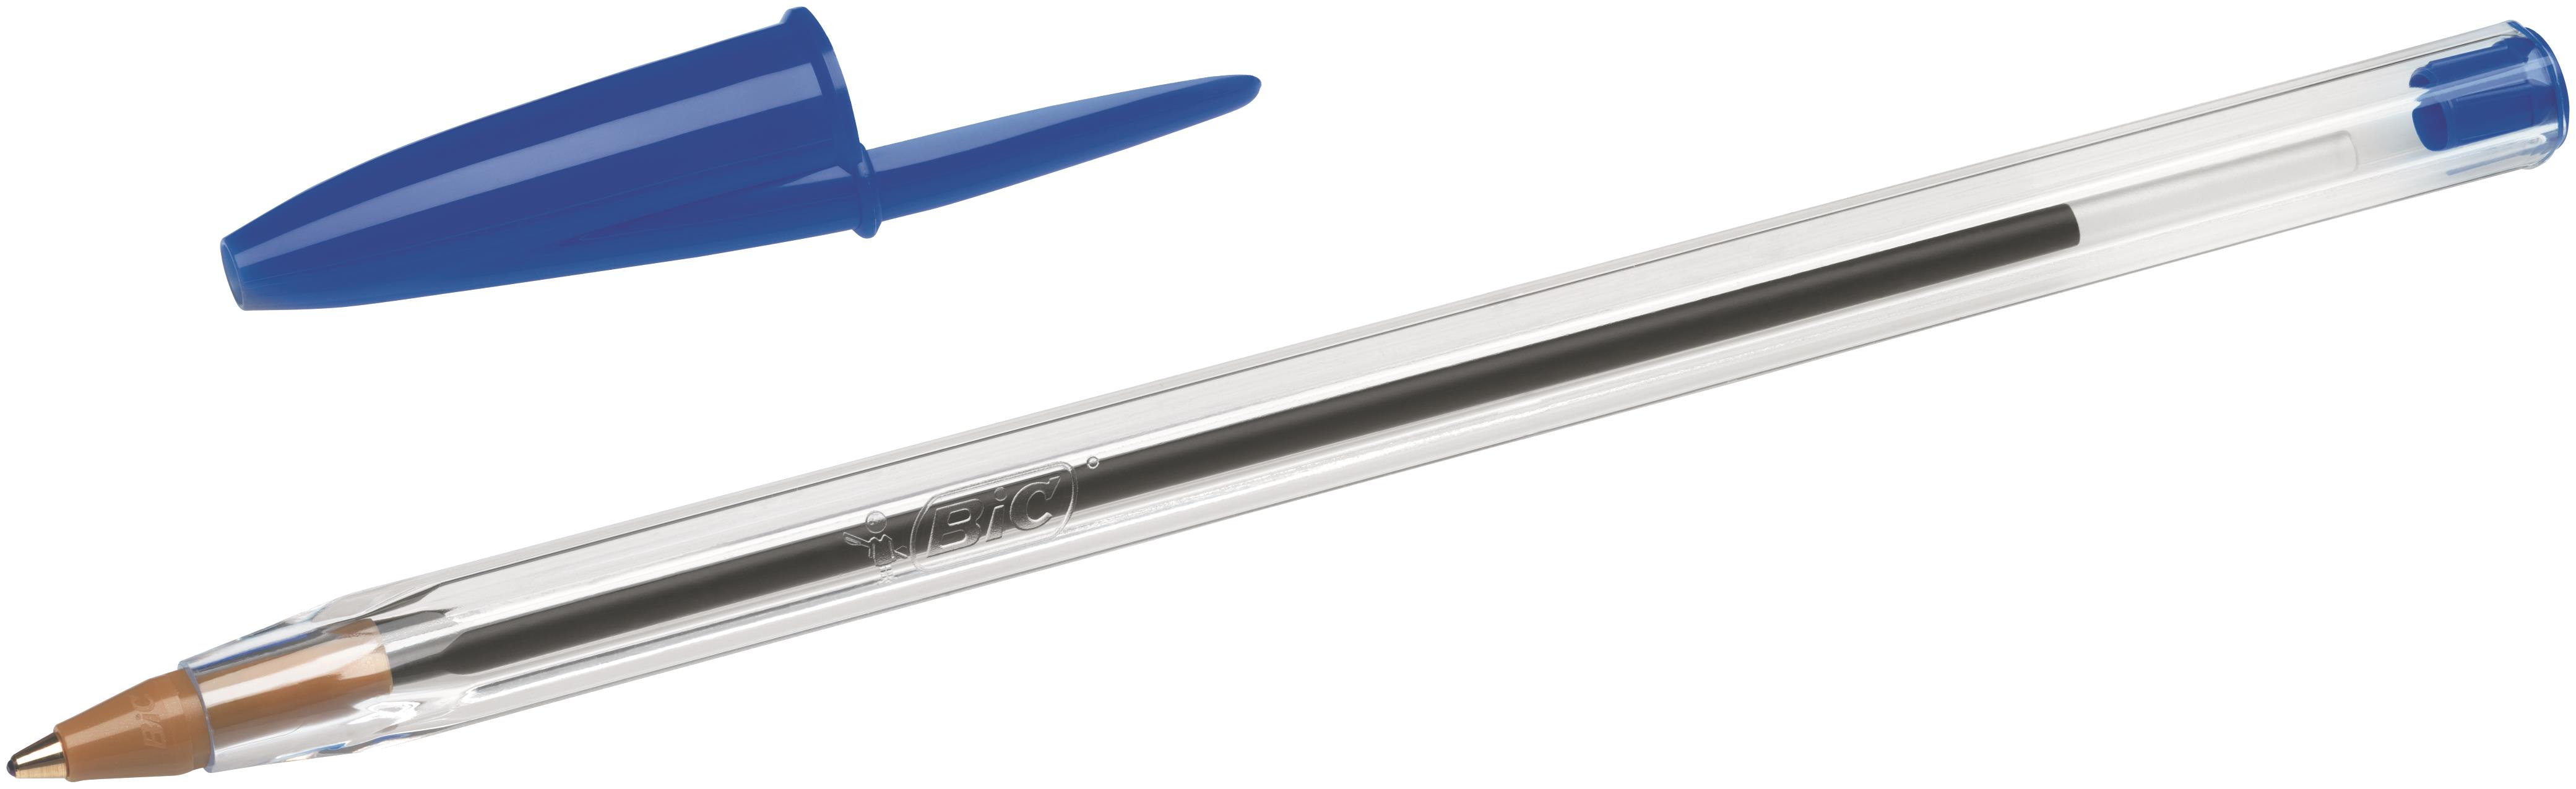 Шариковые ручки оригинал. Ручка шариковая BIC Cristal Original синяя. Ручка шариковая BIC 1.6 mm синяя. Ручка шариковая синяя 0,7мм Cristal exact 992605 BIC. Ручки шариковые BIC Medium.